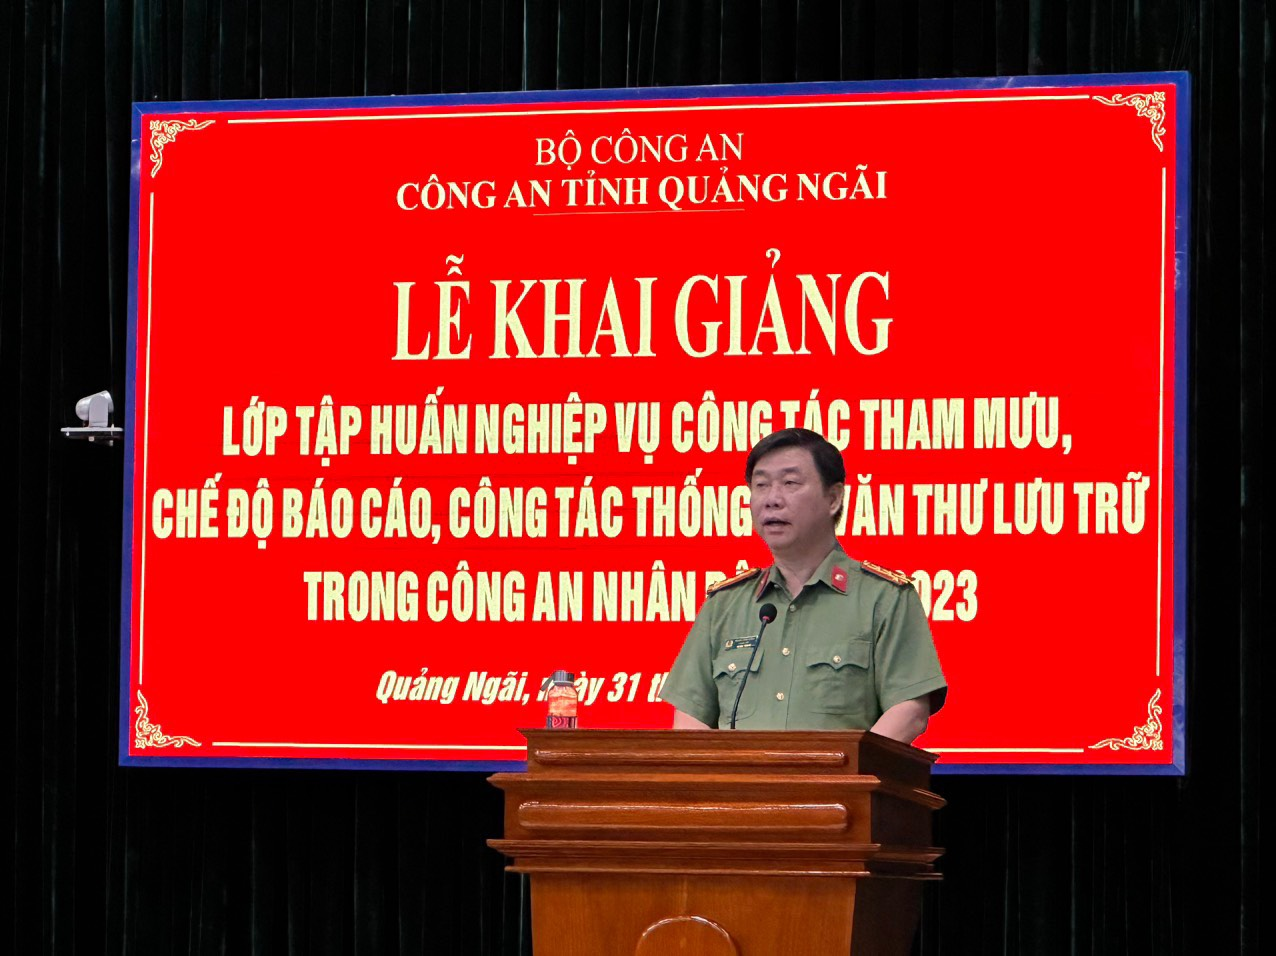 Công an tỉnh Quảng Ngãi khai giảng lớp tập huấn nghiệp vụ công tác tham mưu trong công an nhân dân năm 2023